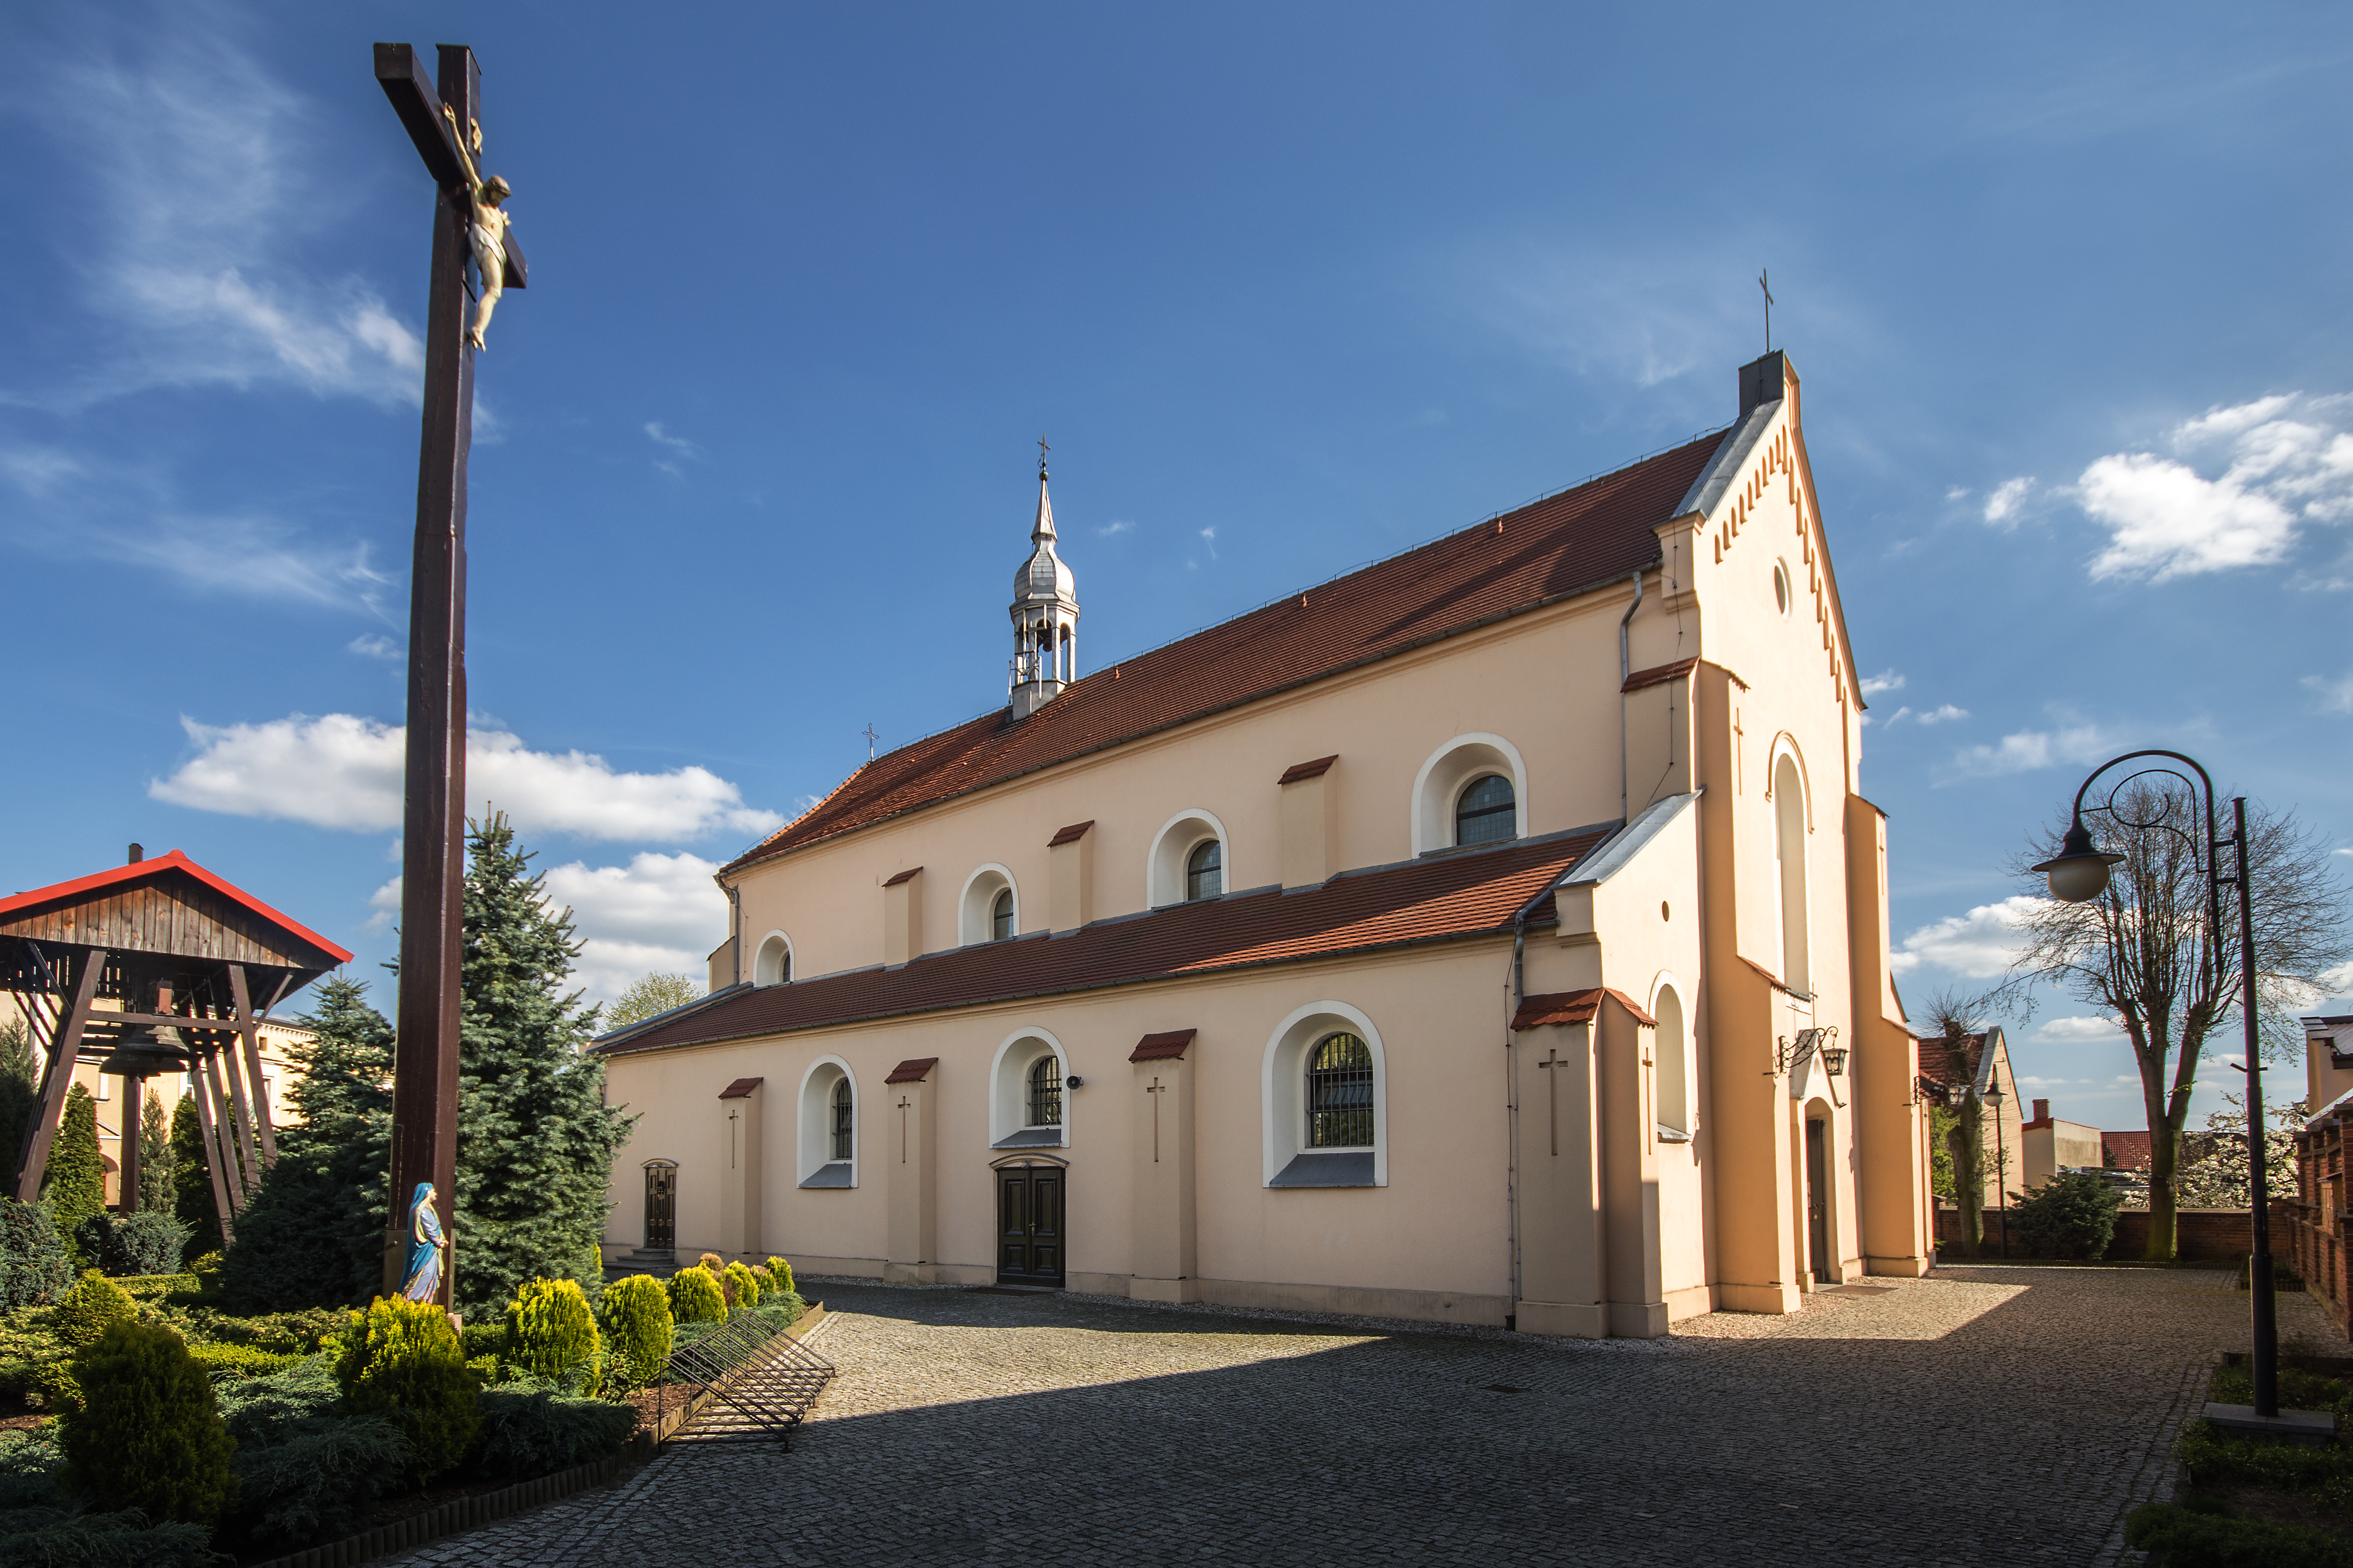 Kościół w Grabowie nad Prosną w powiecie ostrzeszowskim - Wikipedia/Sławomir Milejski 